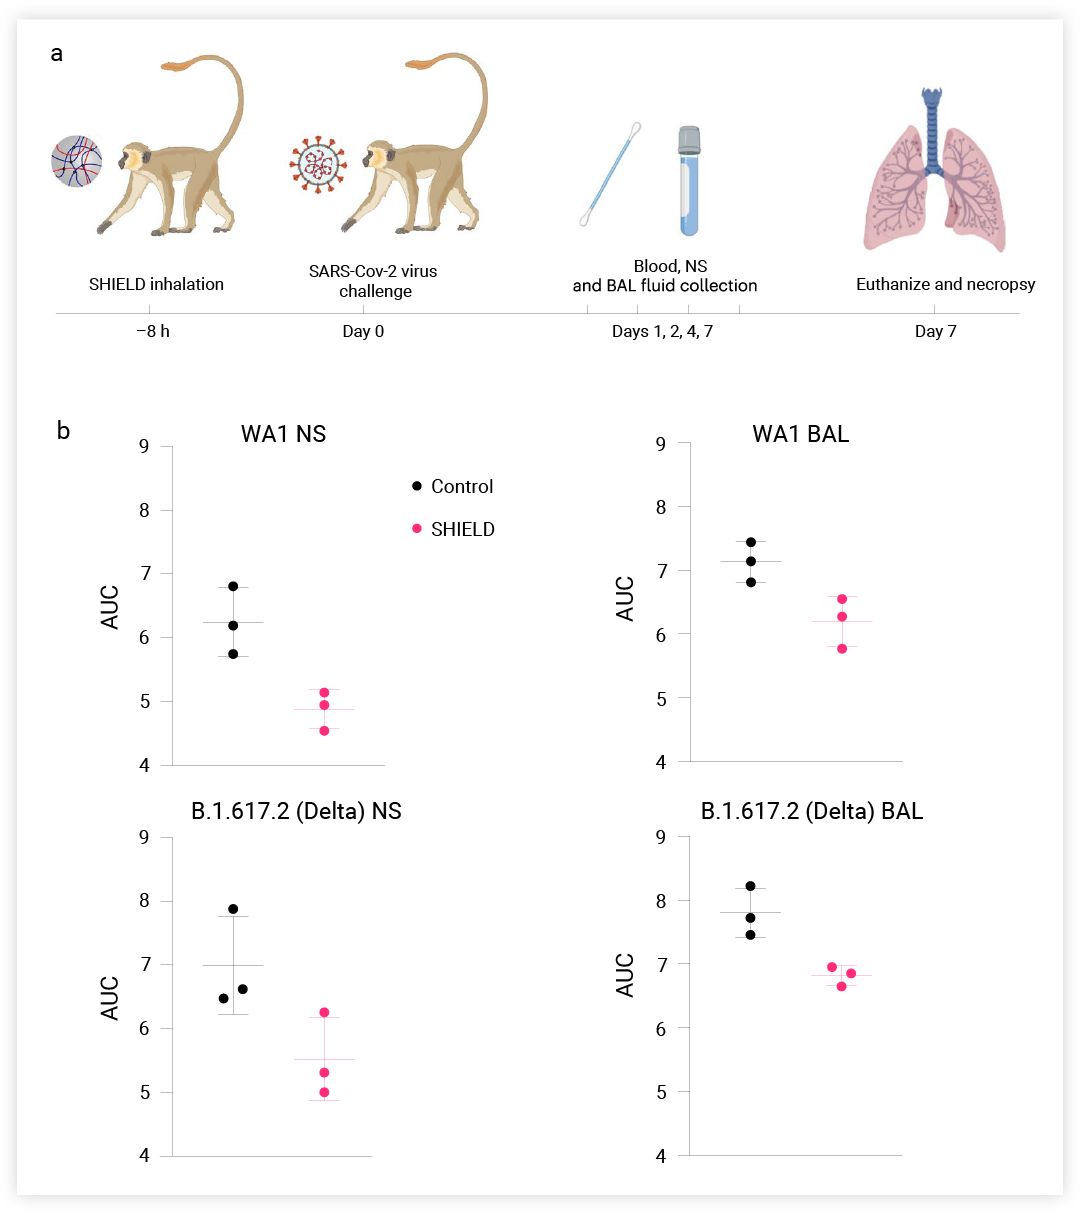 图 5. SHIELD 吸入可保护非洲绿猴免受 SARS-CoV-2 感染[5] a: 非人类灵长类动物研究示意图。BAL, 支气管肺泡灌洗液; NS, 鼻拭子; b: 根据吸入 SHIELD 的非洲绿猴或对照组的曲线下面积 (AUC) 计算的病毒负荷。